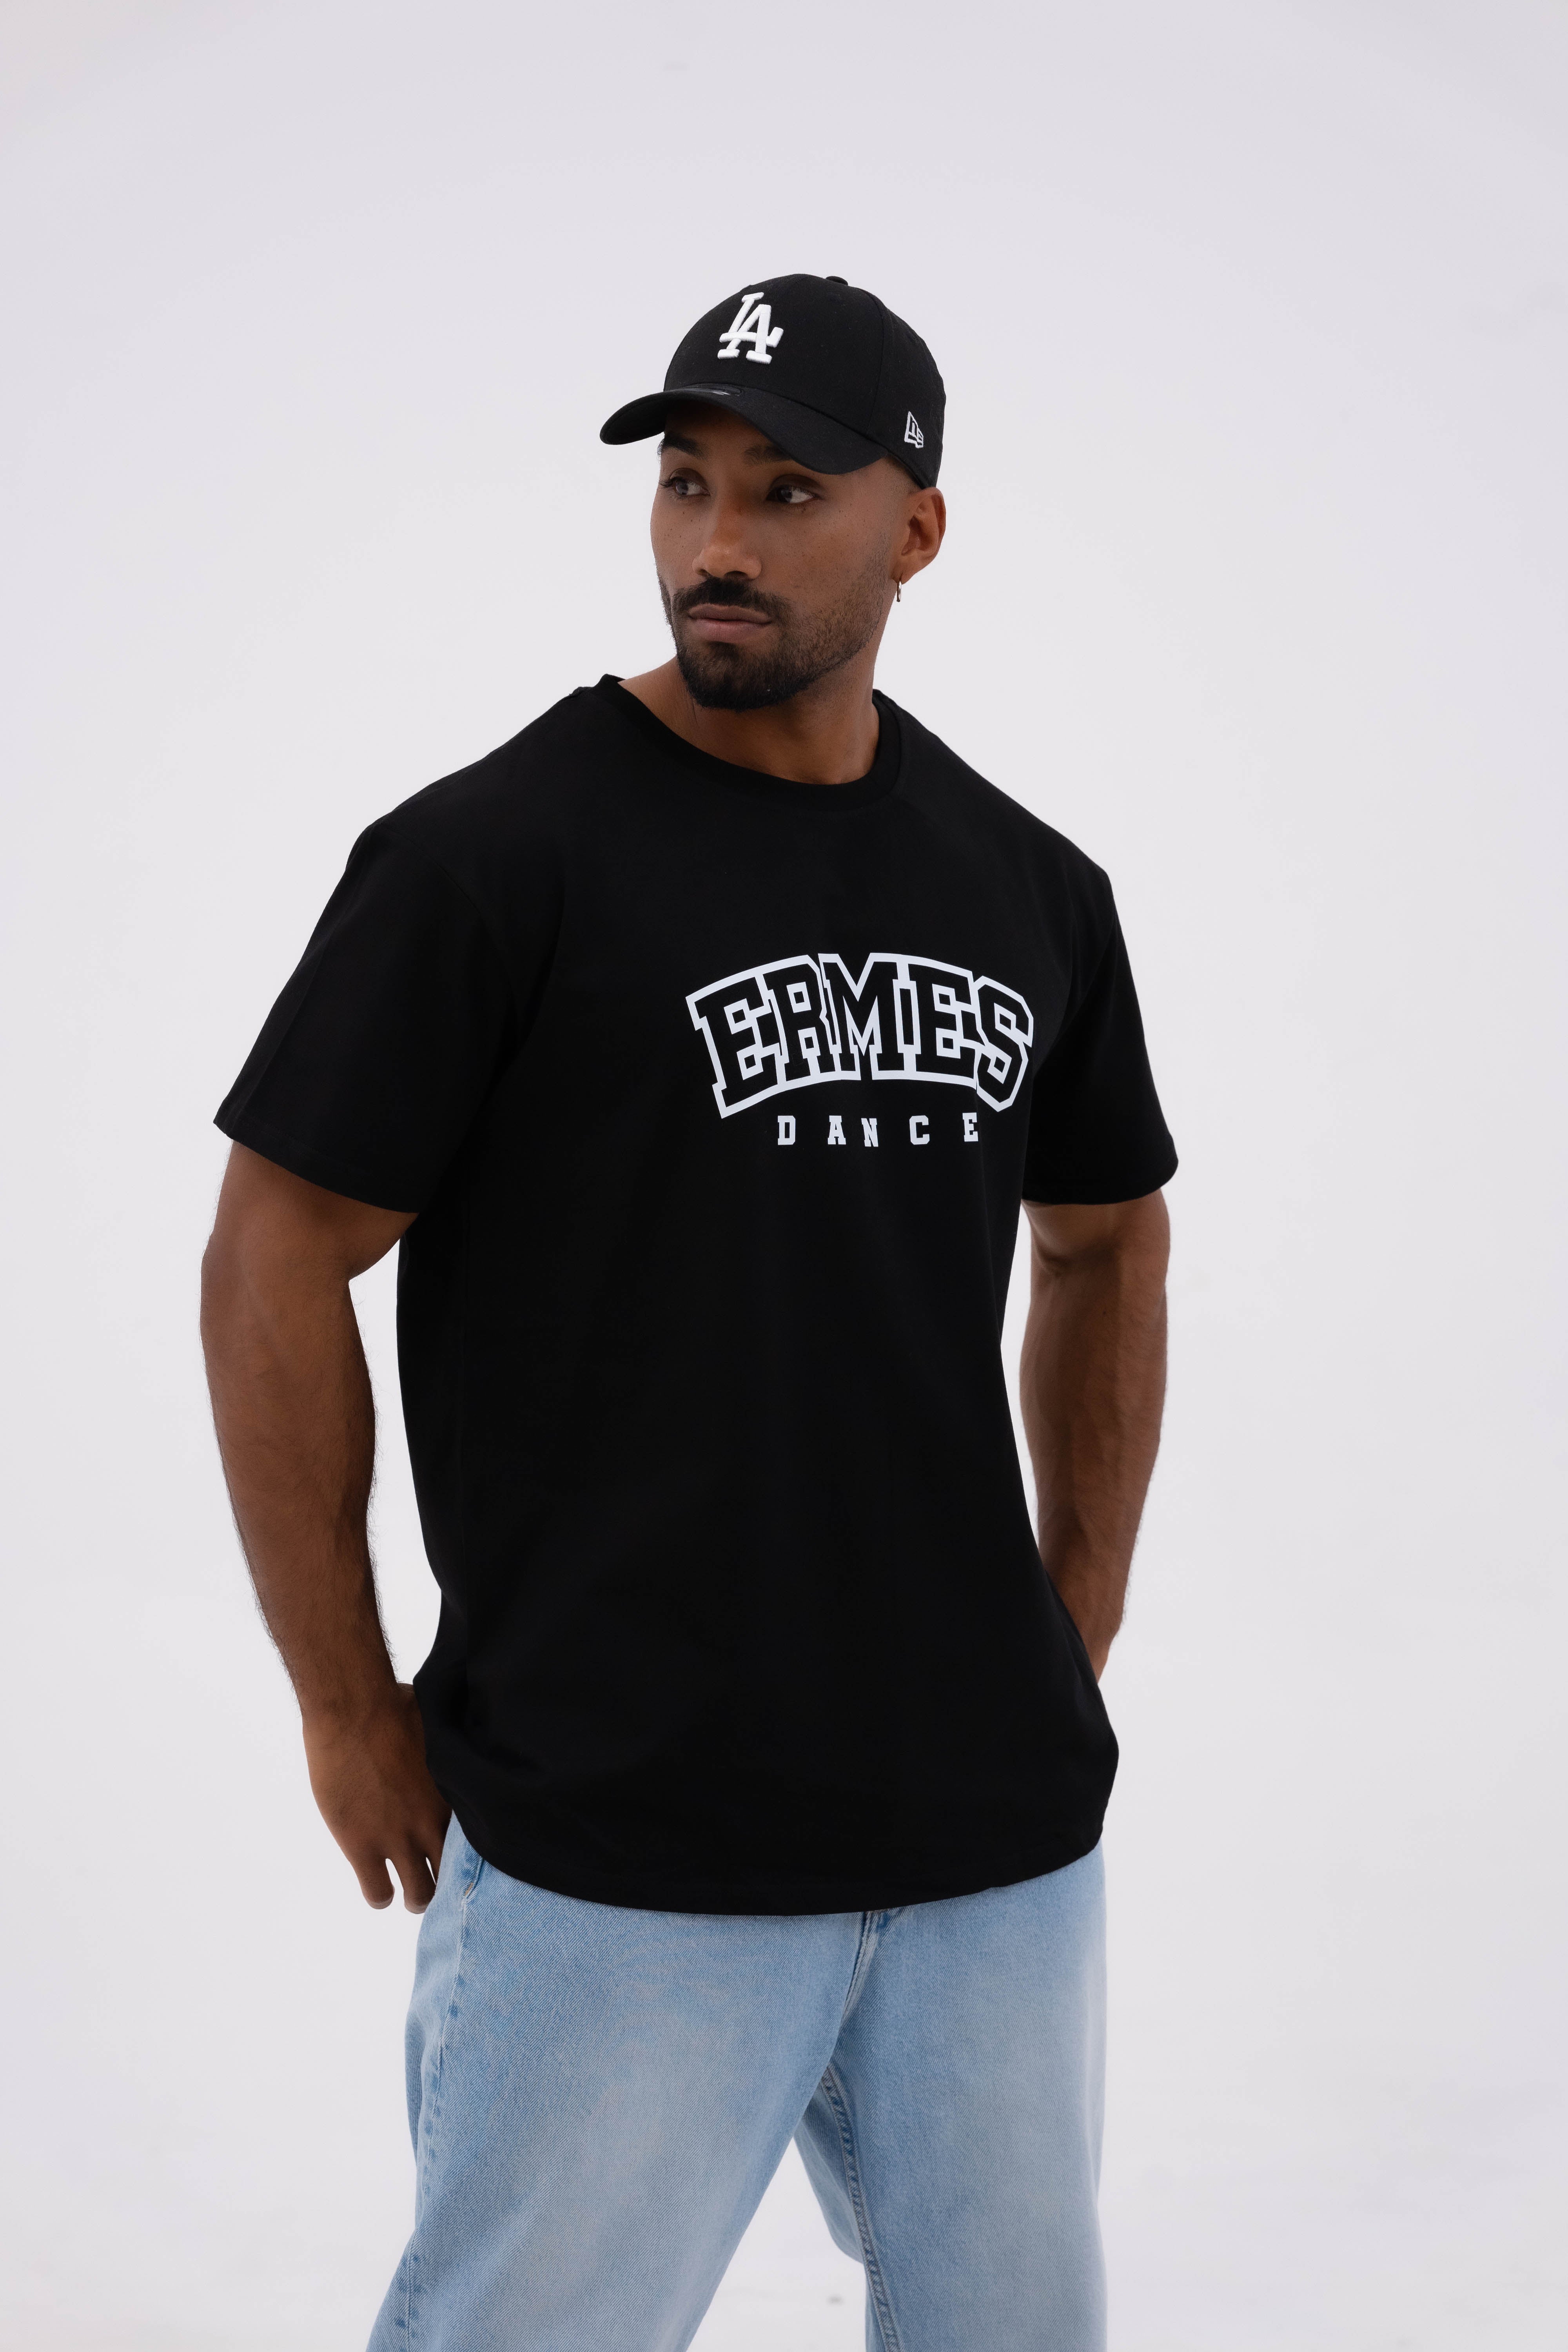 University Ermes Men T-Shirt